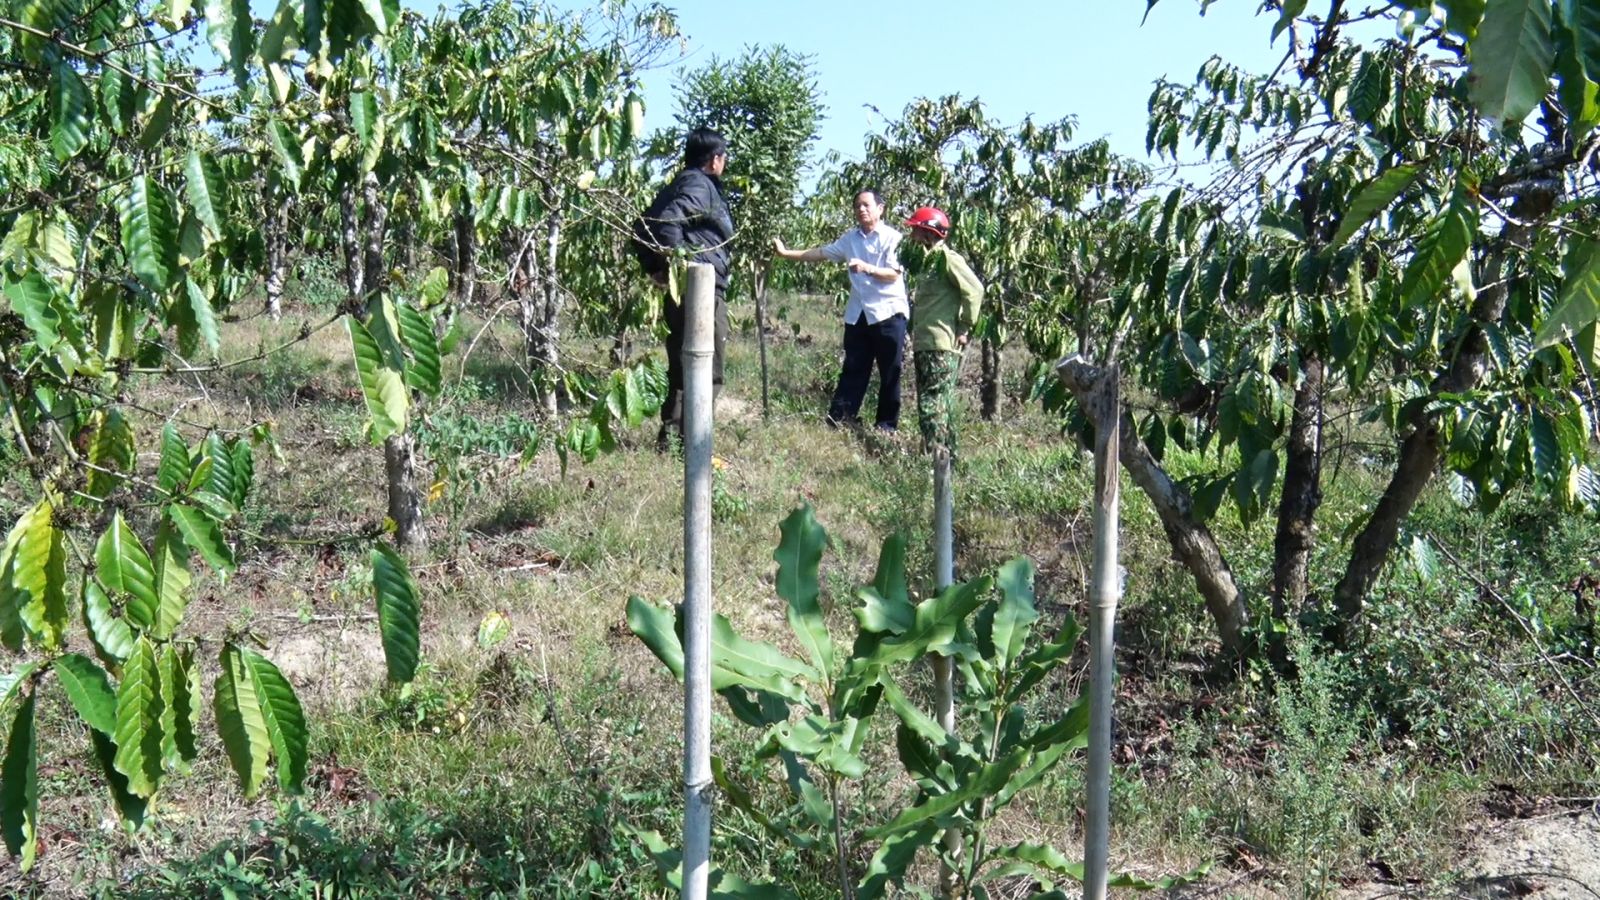 Loại cây cho hạt ăn bổ dưỡng, hỗ trợ giảm mỡ máu, ở huyện này của Kon Tum dân đang trồng thêm - Ảnh 3.